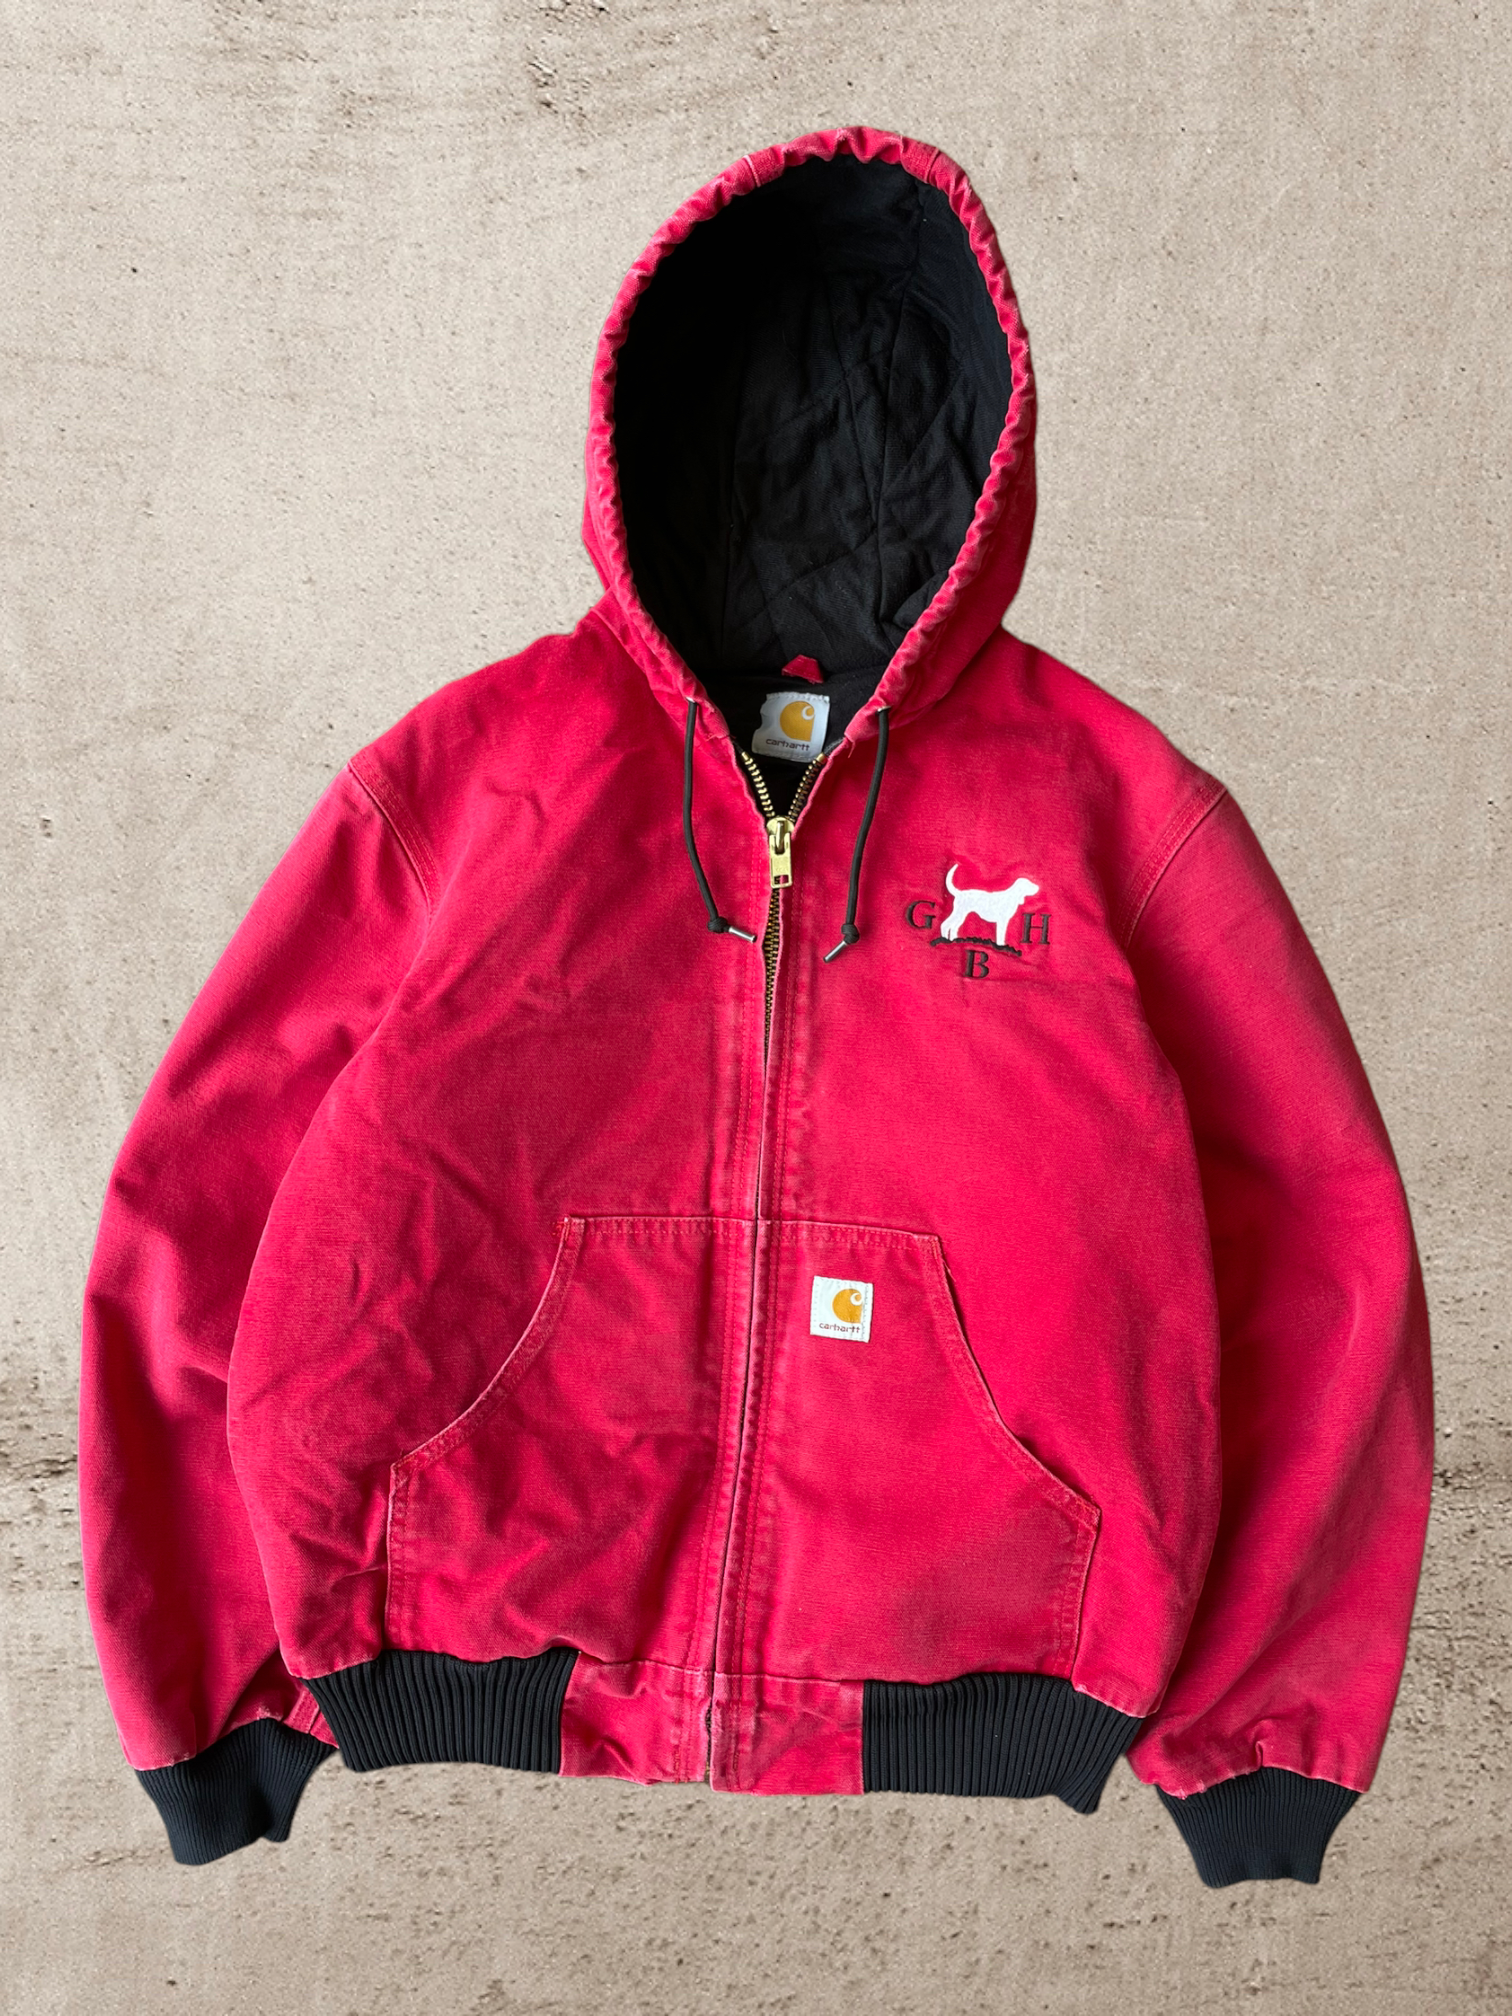 90s Carhartt Hooded Jacket - Medium